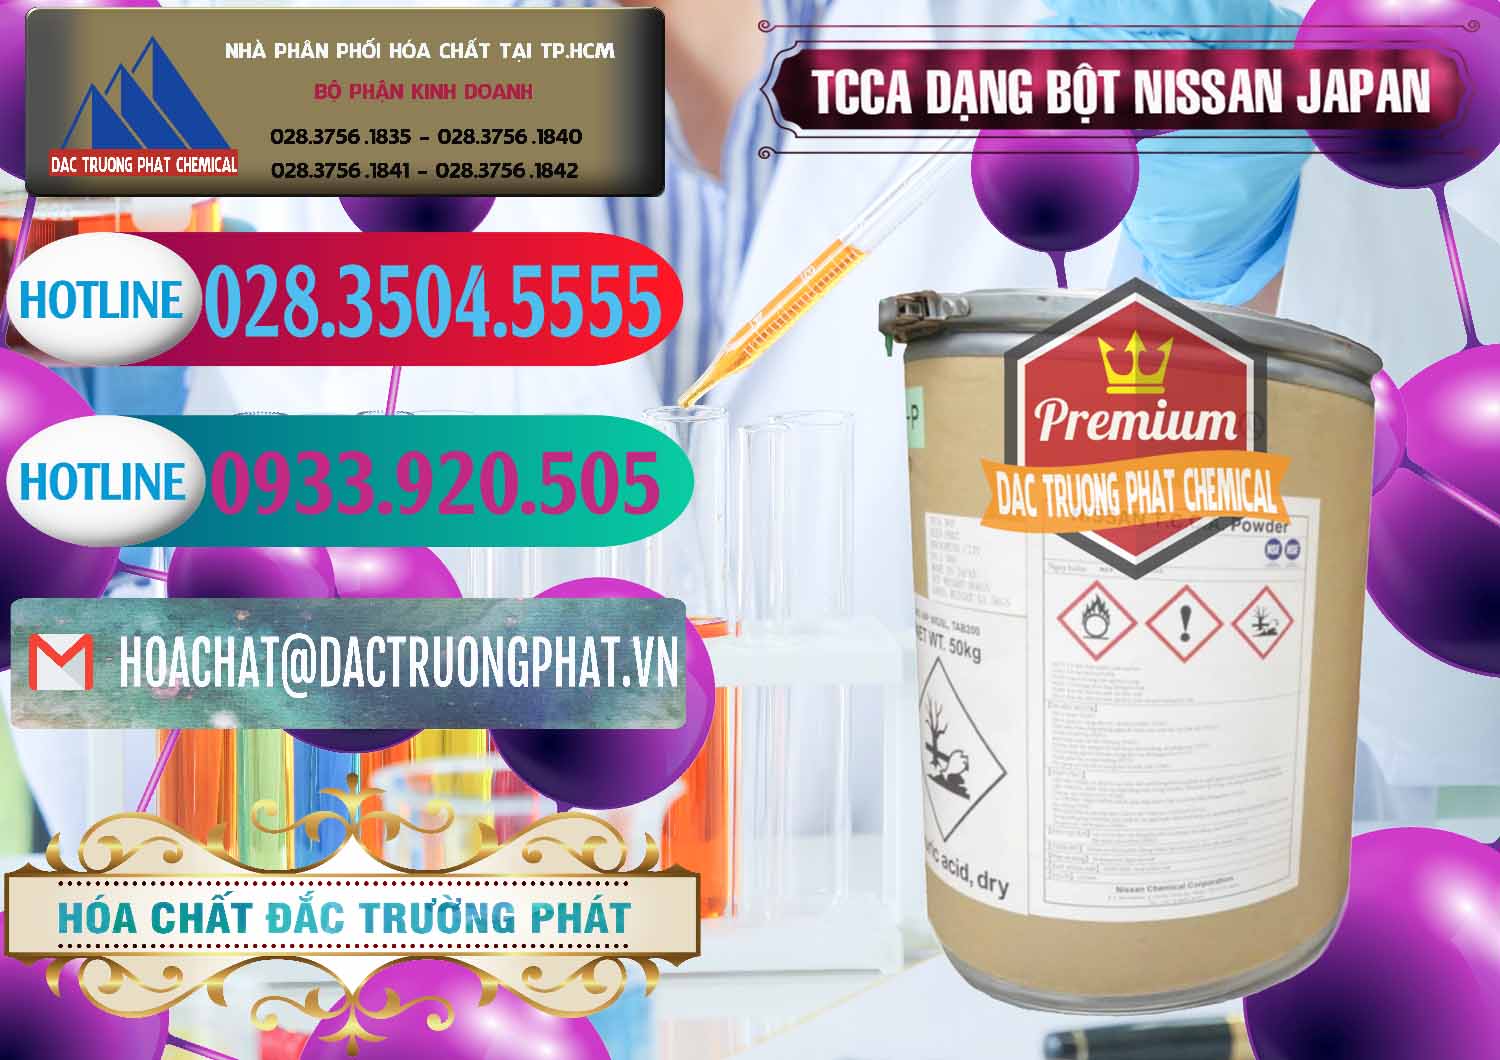 Nhập khẩu - bán TCCA - Acid Trichloroisocyanuric 90% Dạng Bột Nissan Nhật Bản Japan - 0375 - Cty cung ứng _ phân phối hóa chất tại TP.HCM - truongphat.vn